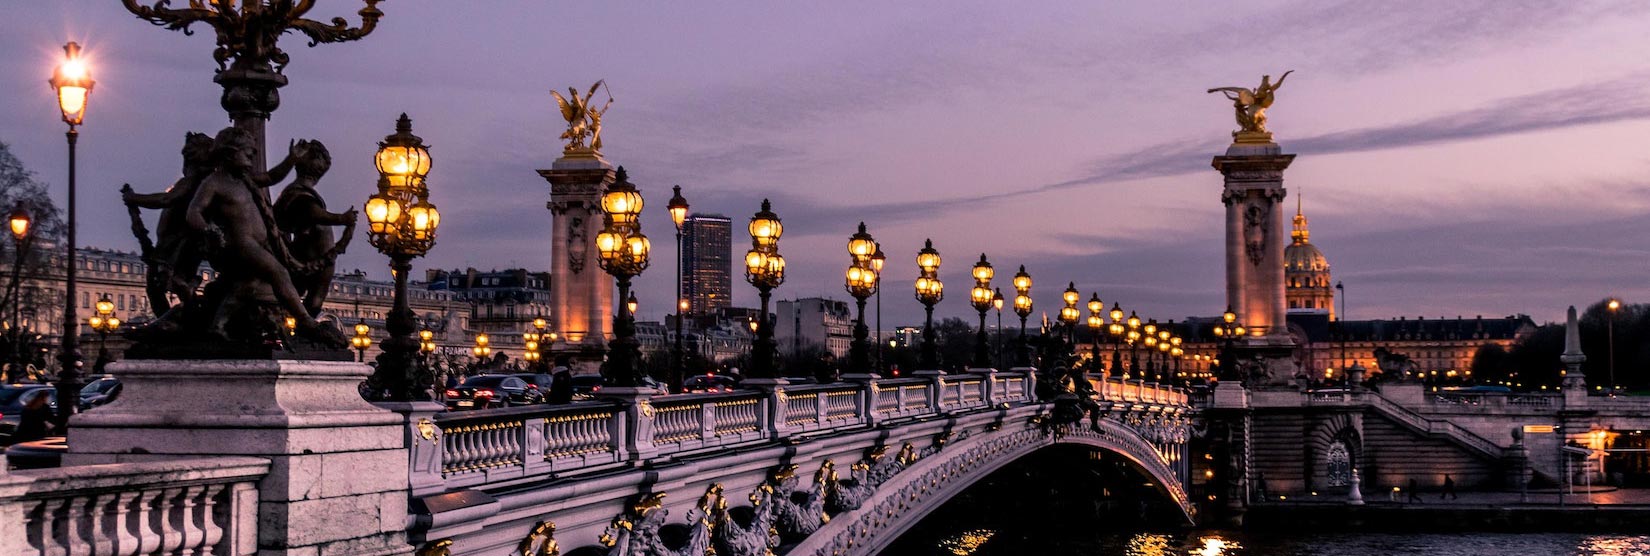 جسر بونت ألكسندر الثالث باريس، فرنسا